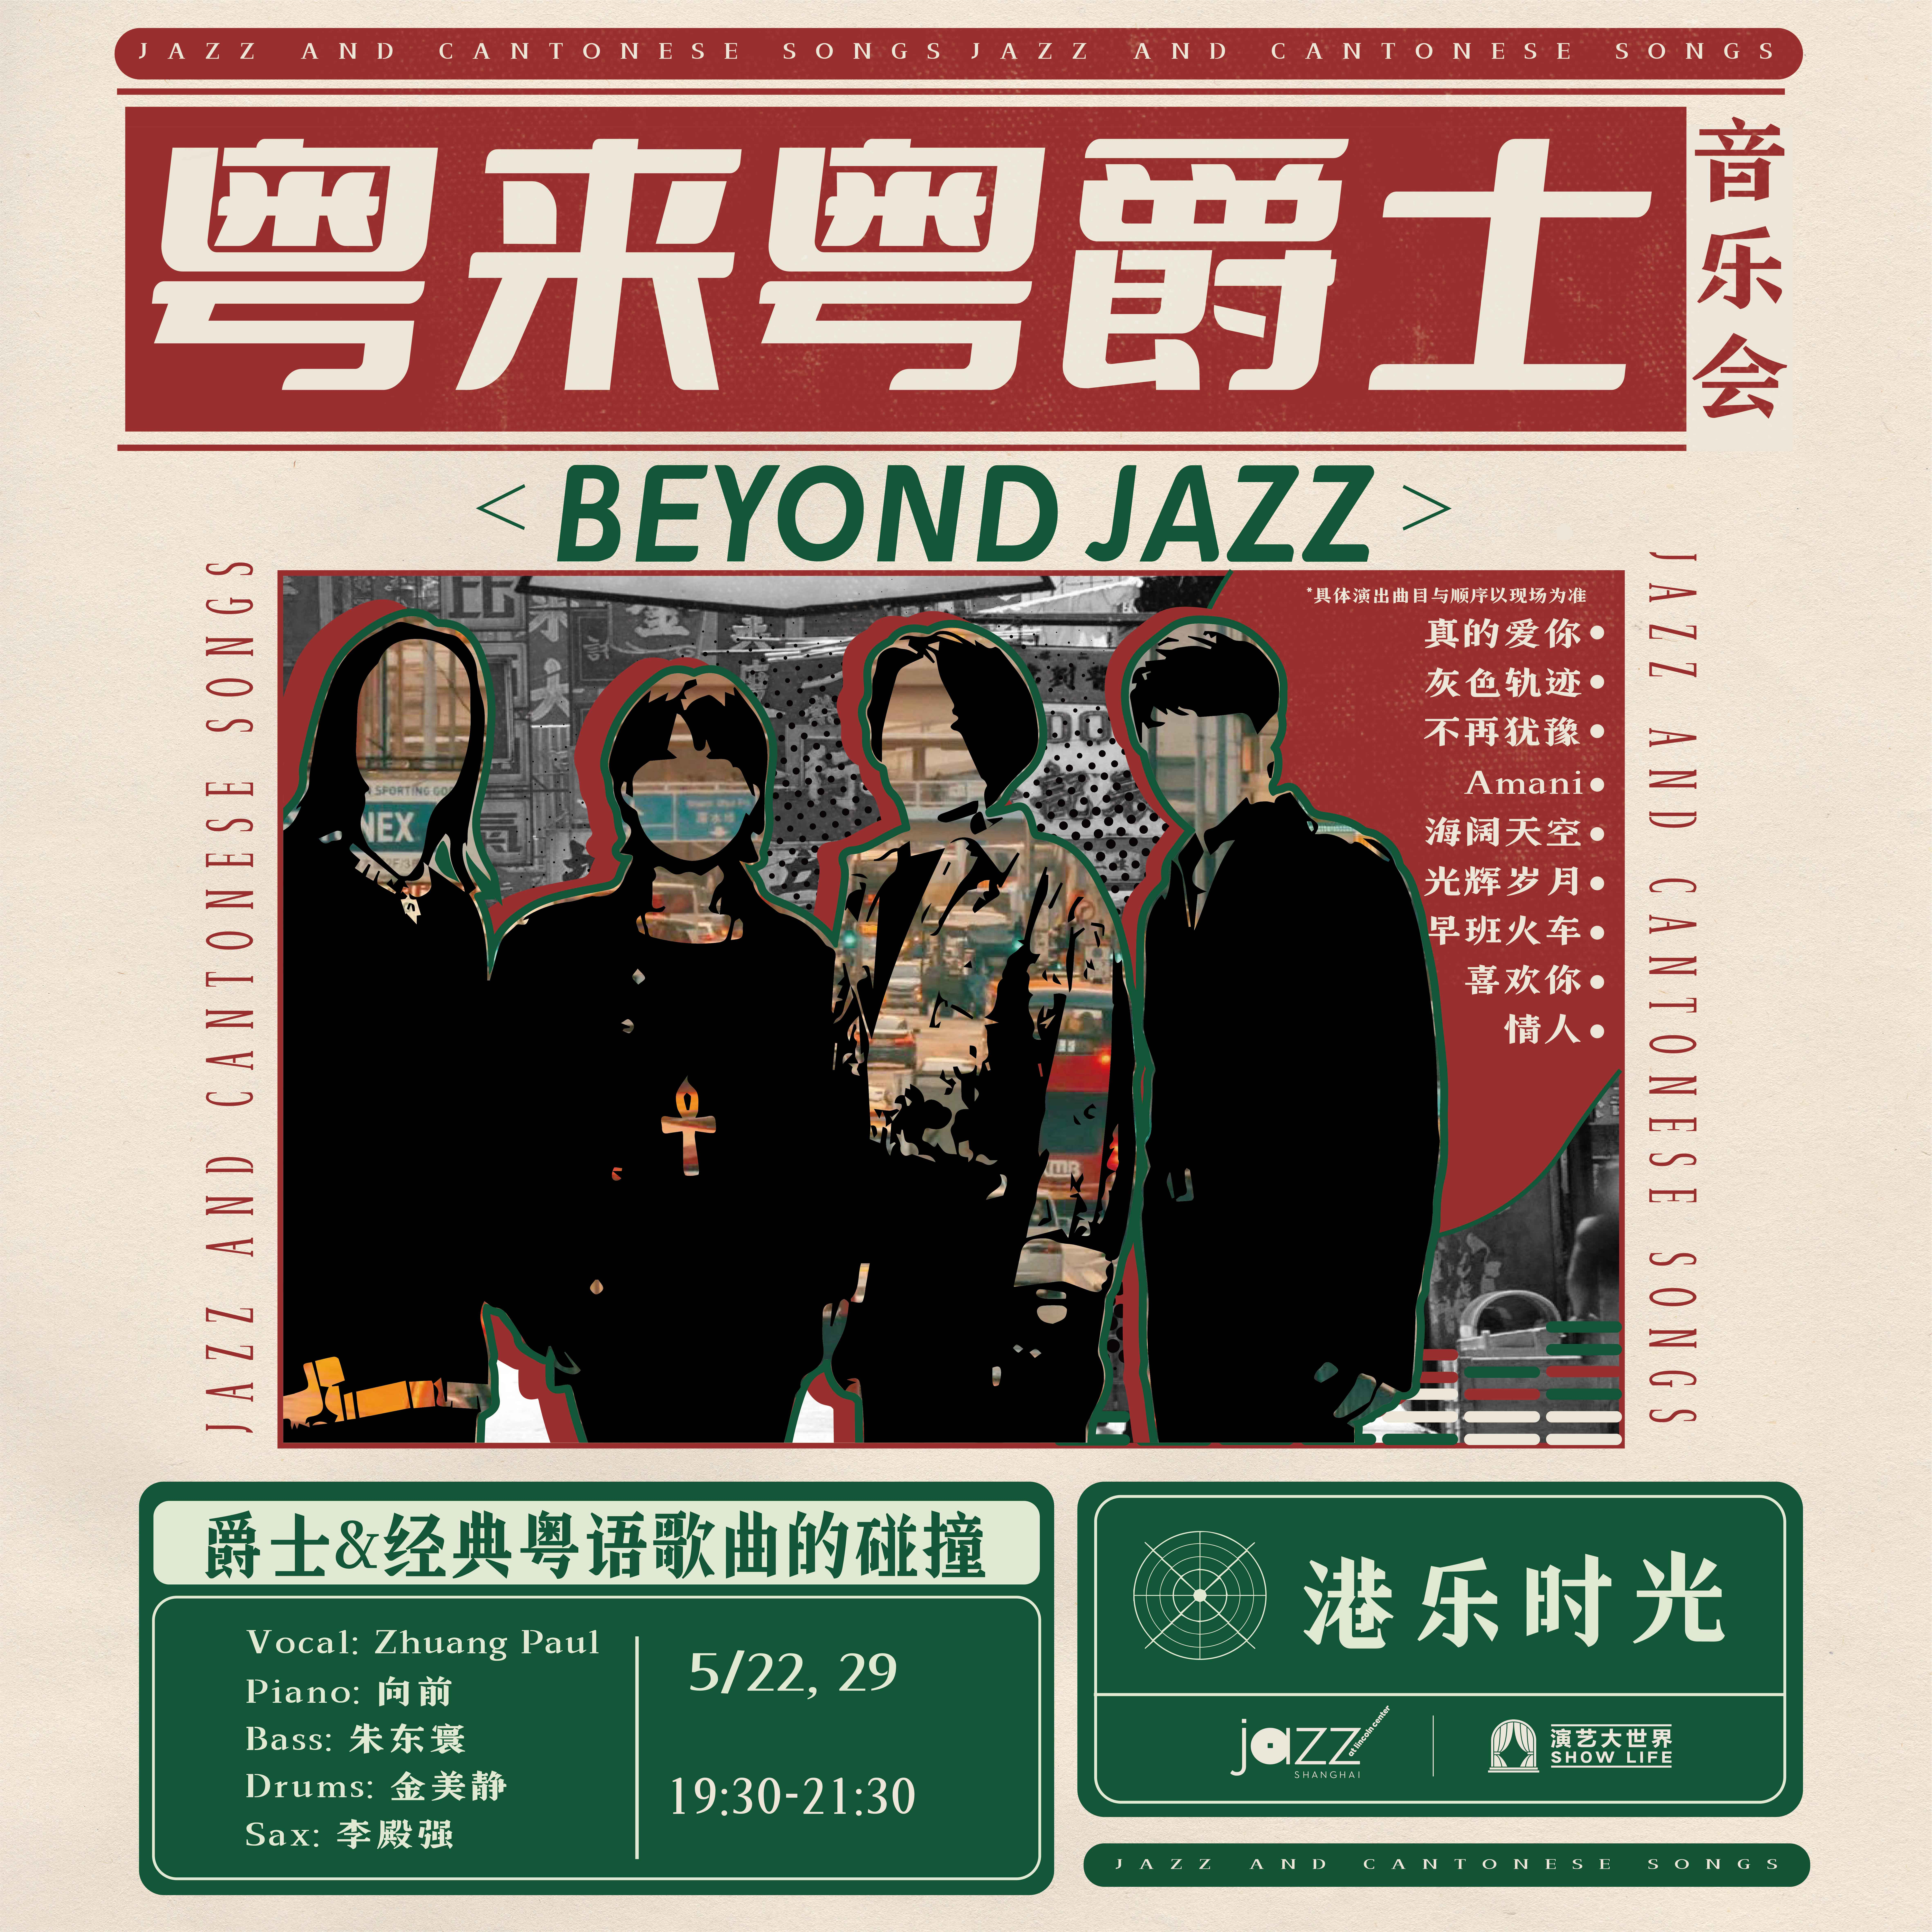 5.22&29 粤来粤爵士音乐会-Beyond Jazz